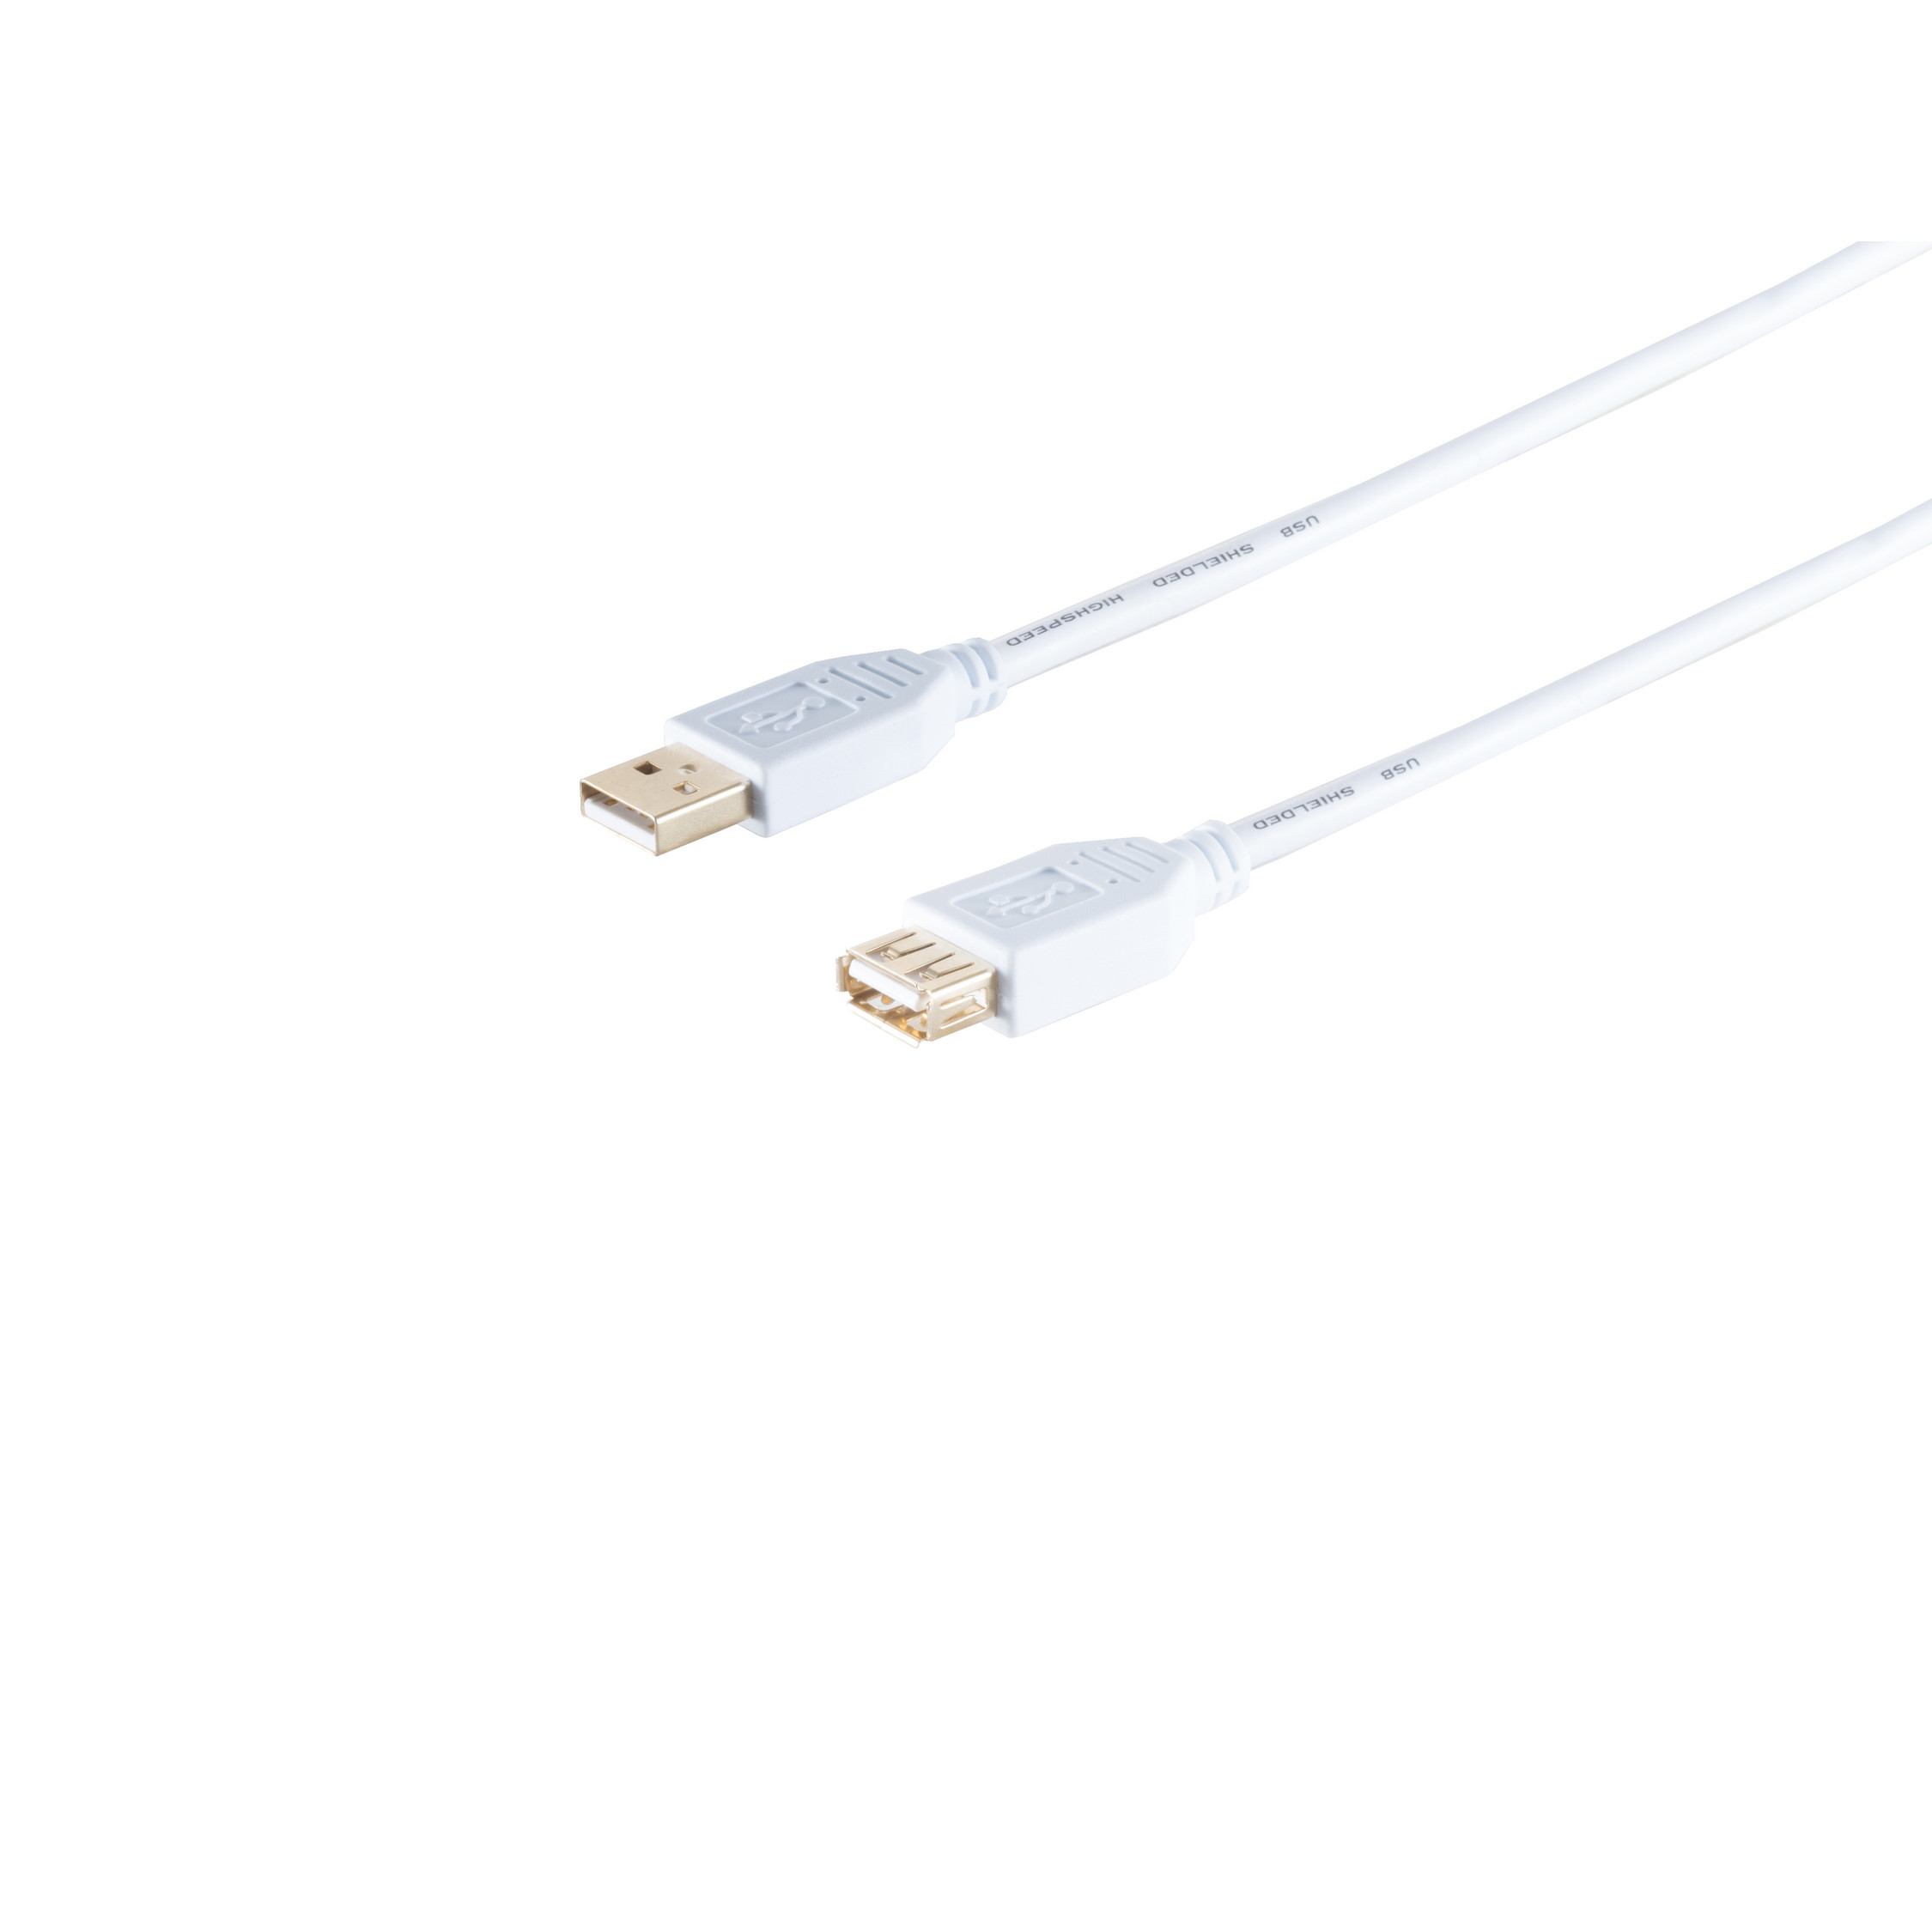 USB Kabel USB MAXIMUM 2.0, 2.0 weiß, Buchse, A/A USB Speed High S/CONN Verlängerung, 1m CONNECTIVITY